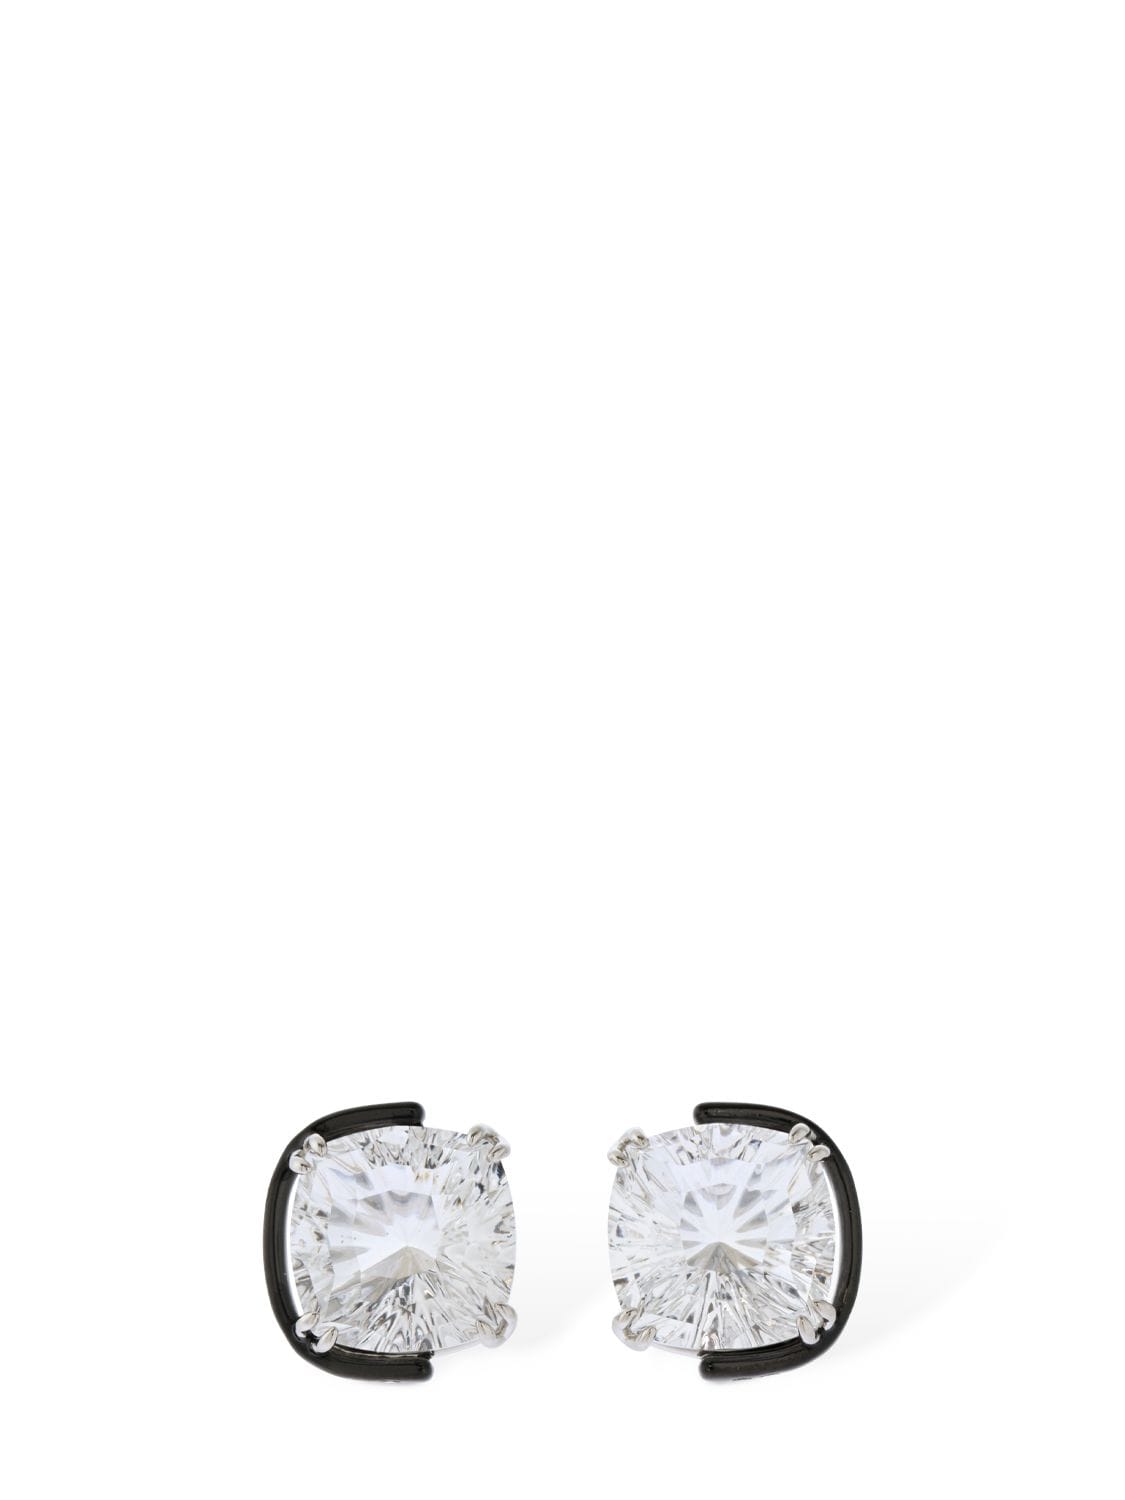 Image of Harmonia Swarovski Stud Earrings